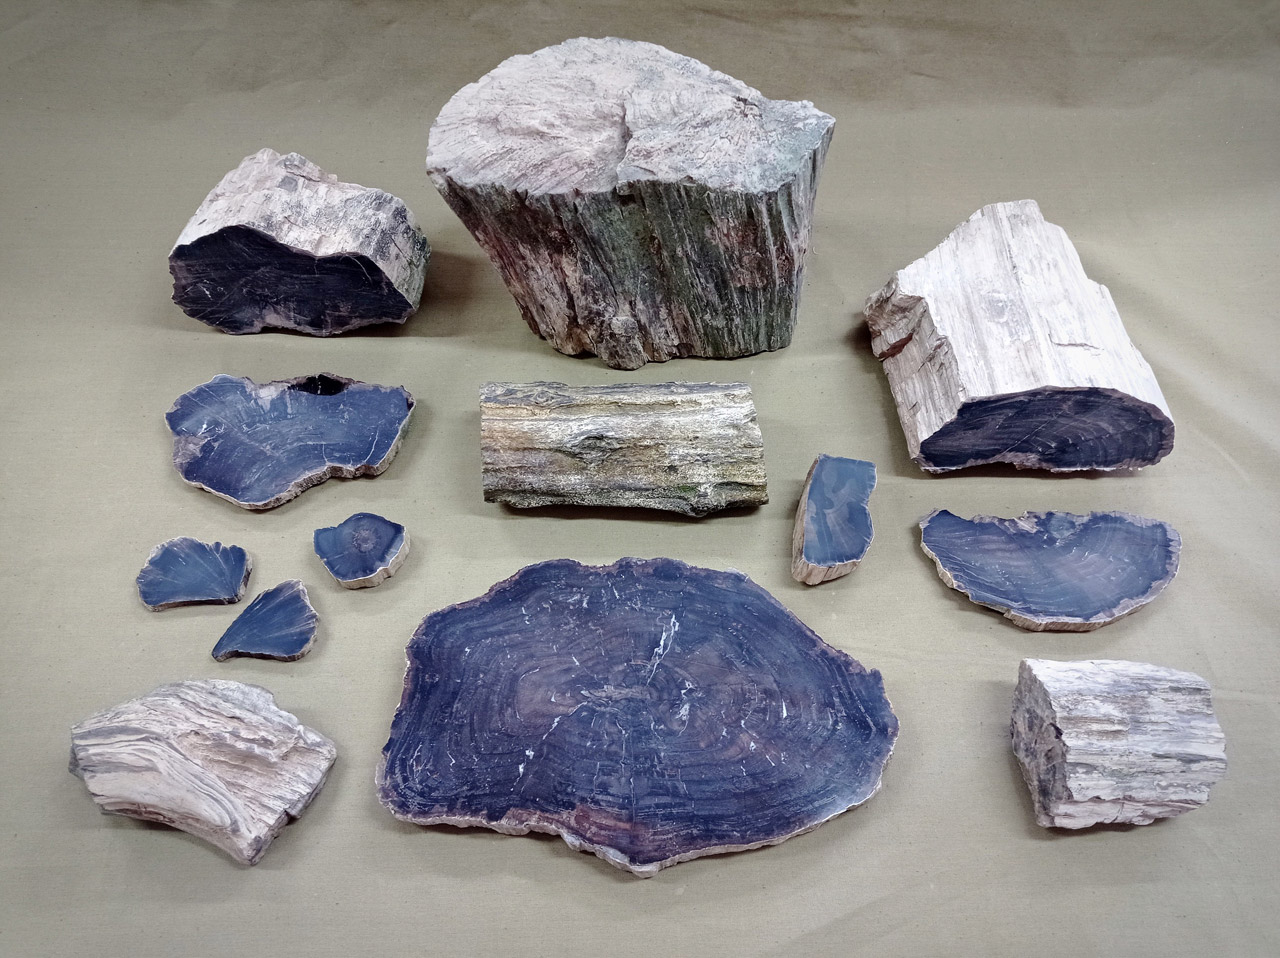 Им миллионы лет: фрагменты окаменелого дерева нашли на Южном Урале